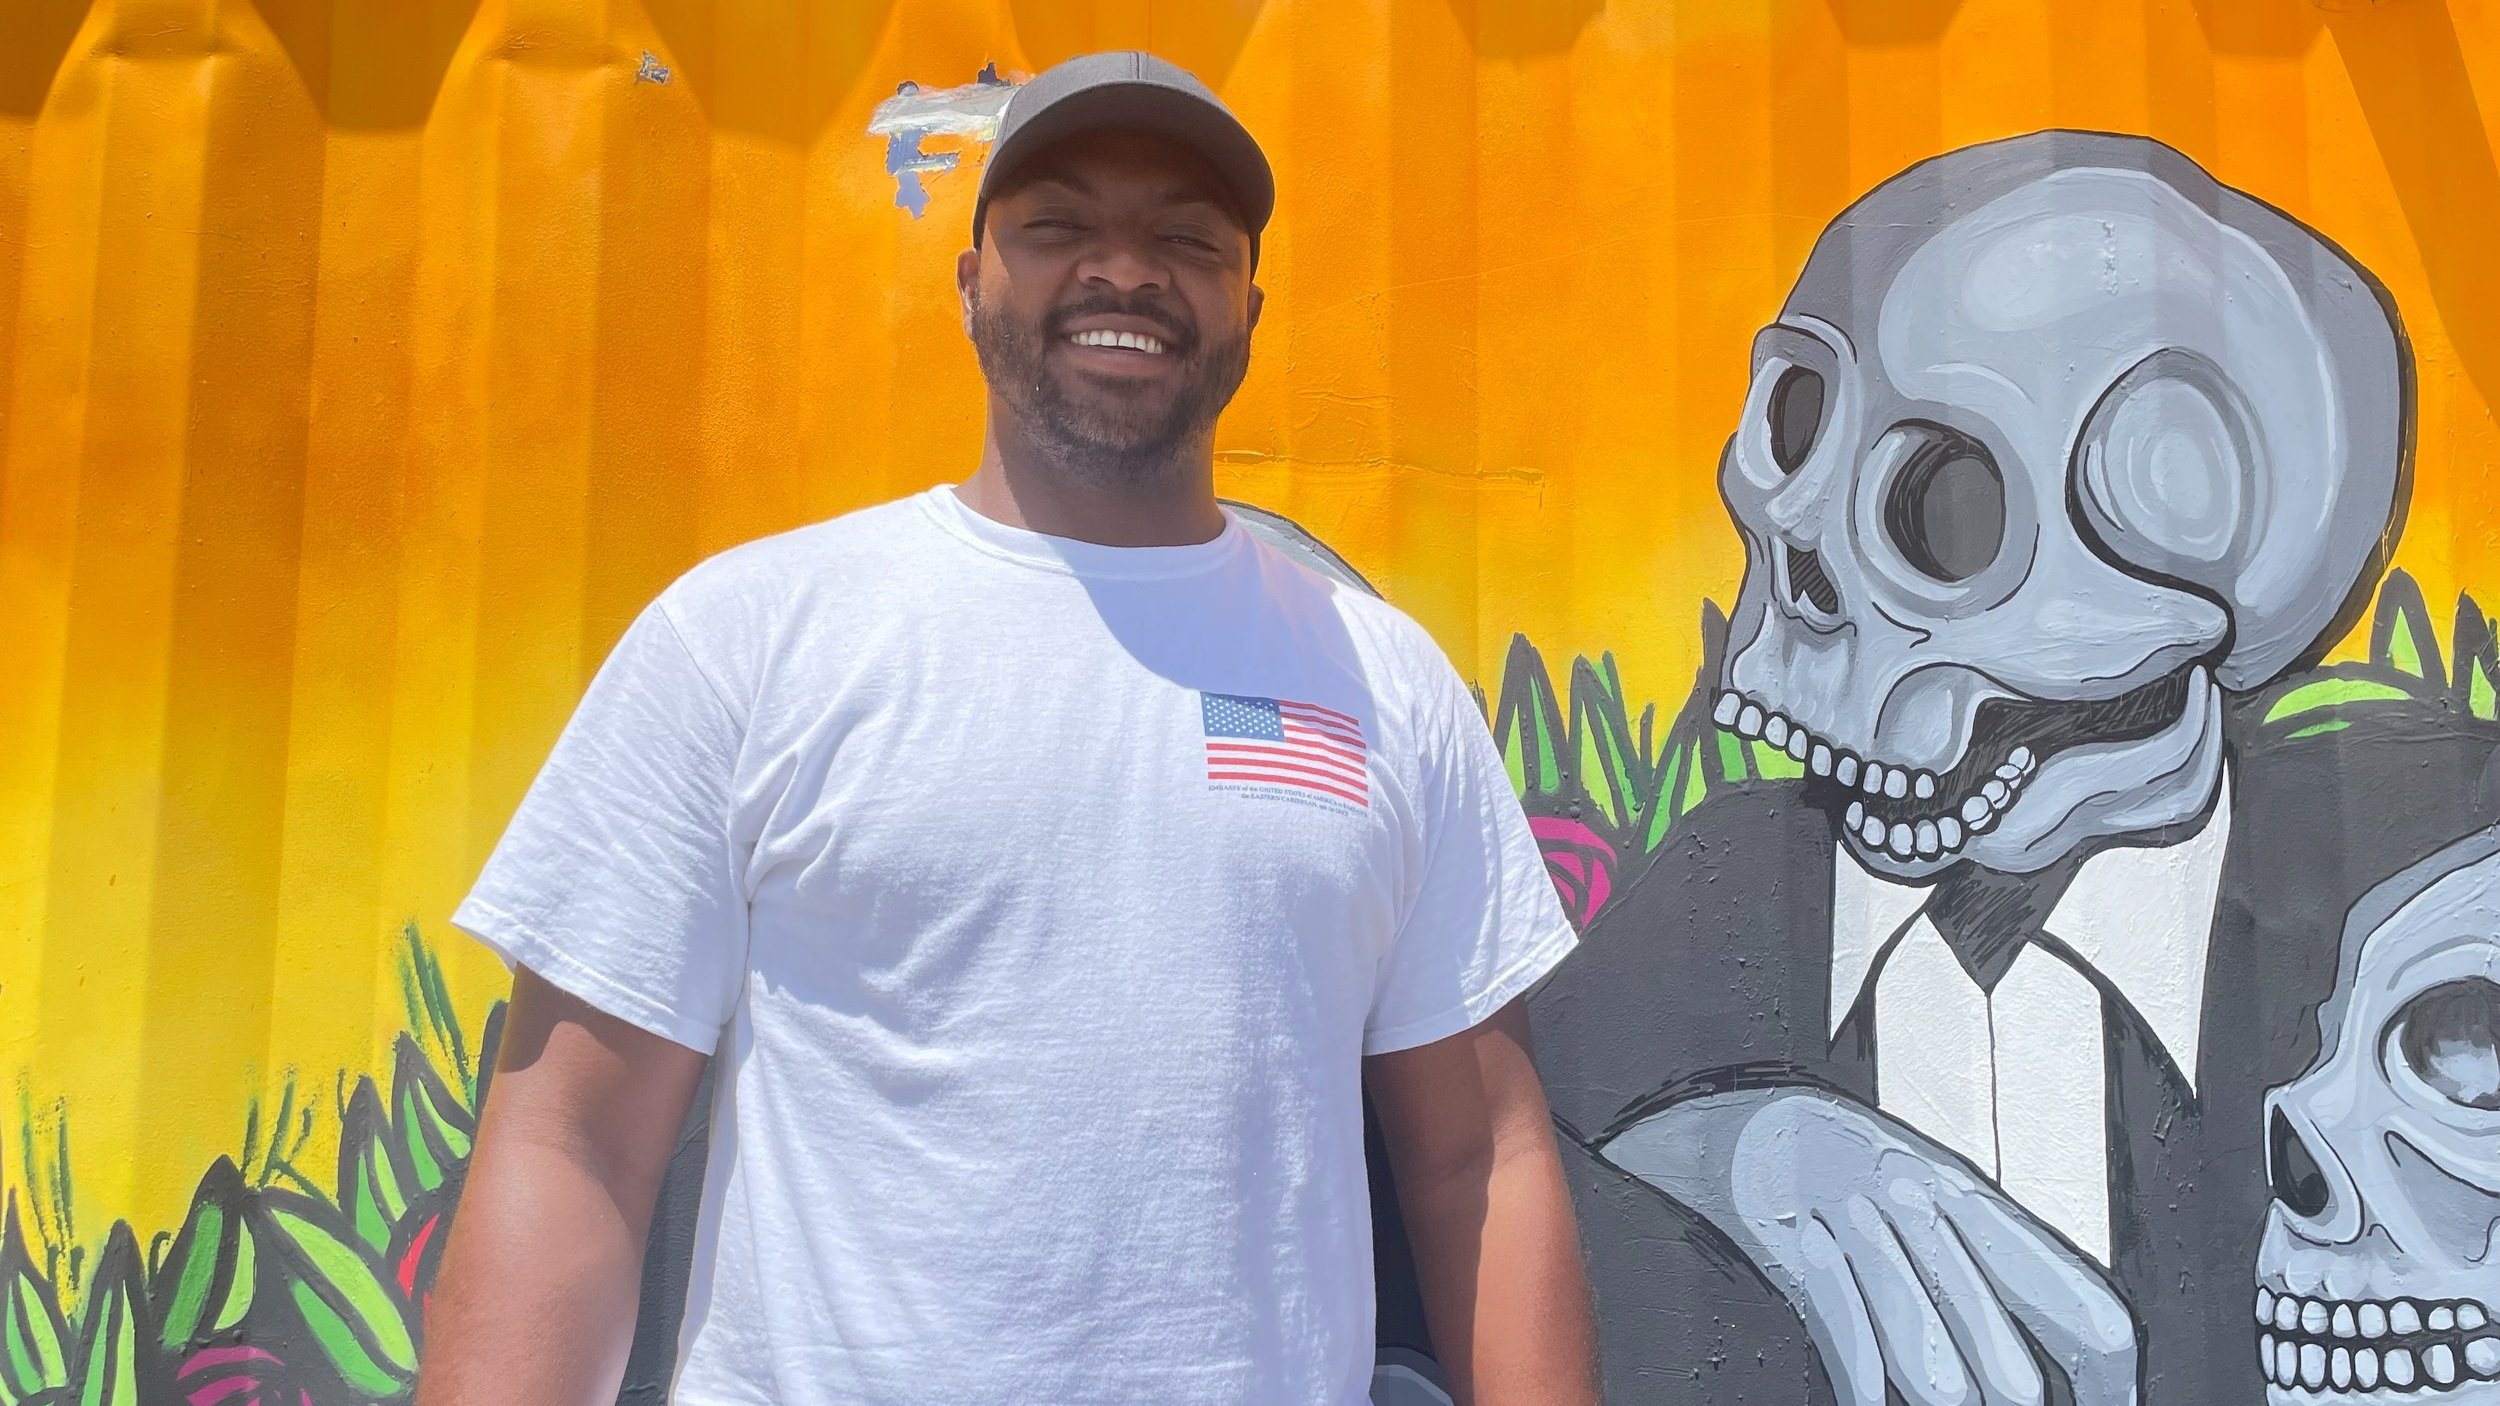 Johann Callendar, wearing an American flag T-shirt, stands in front of a mural.